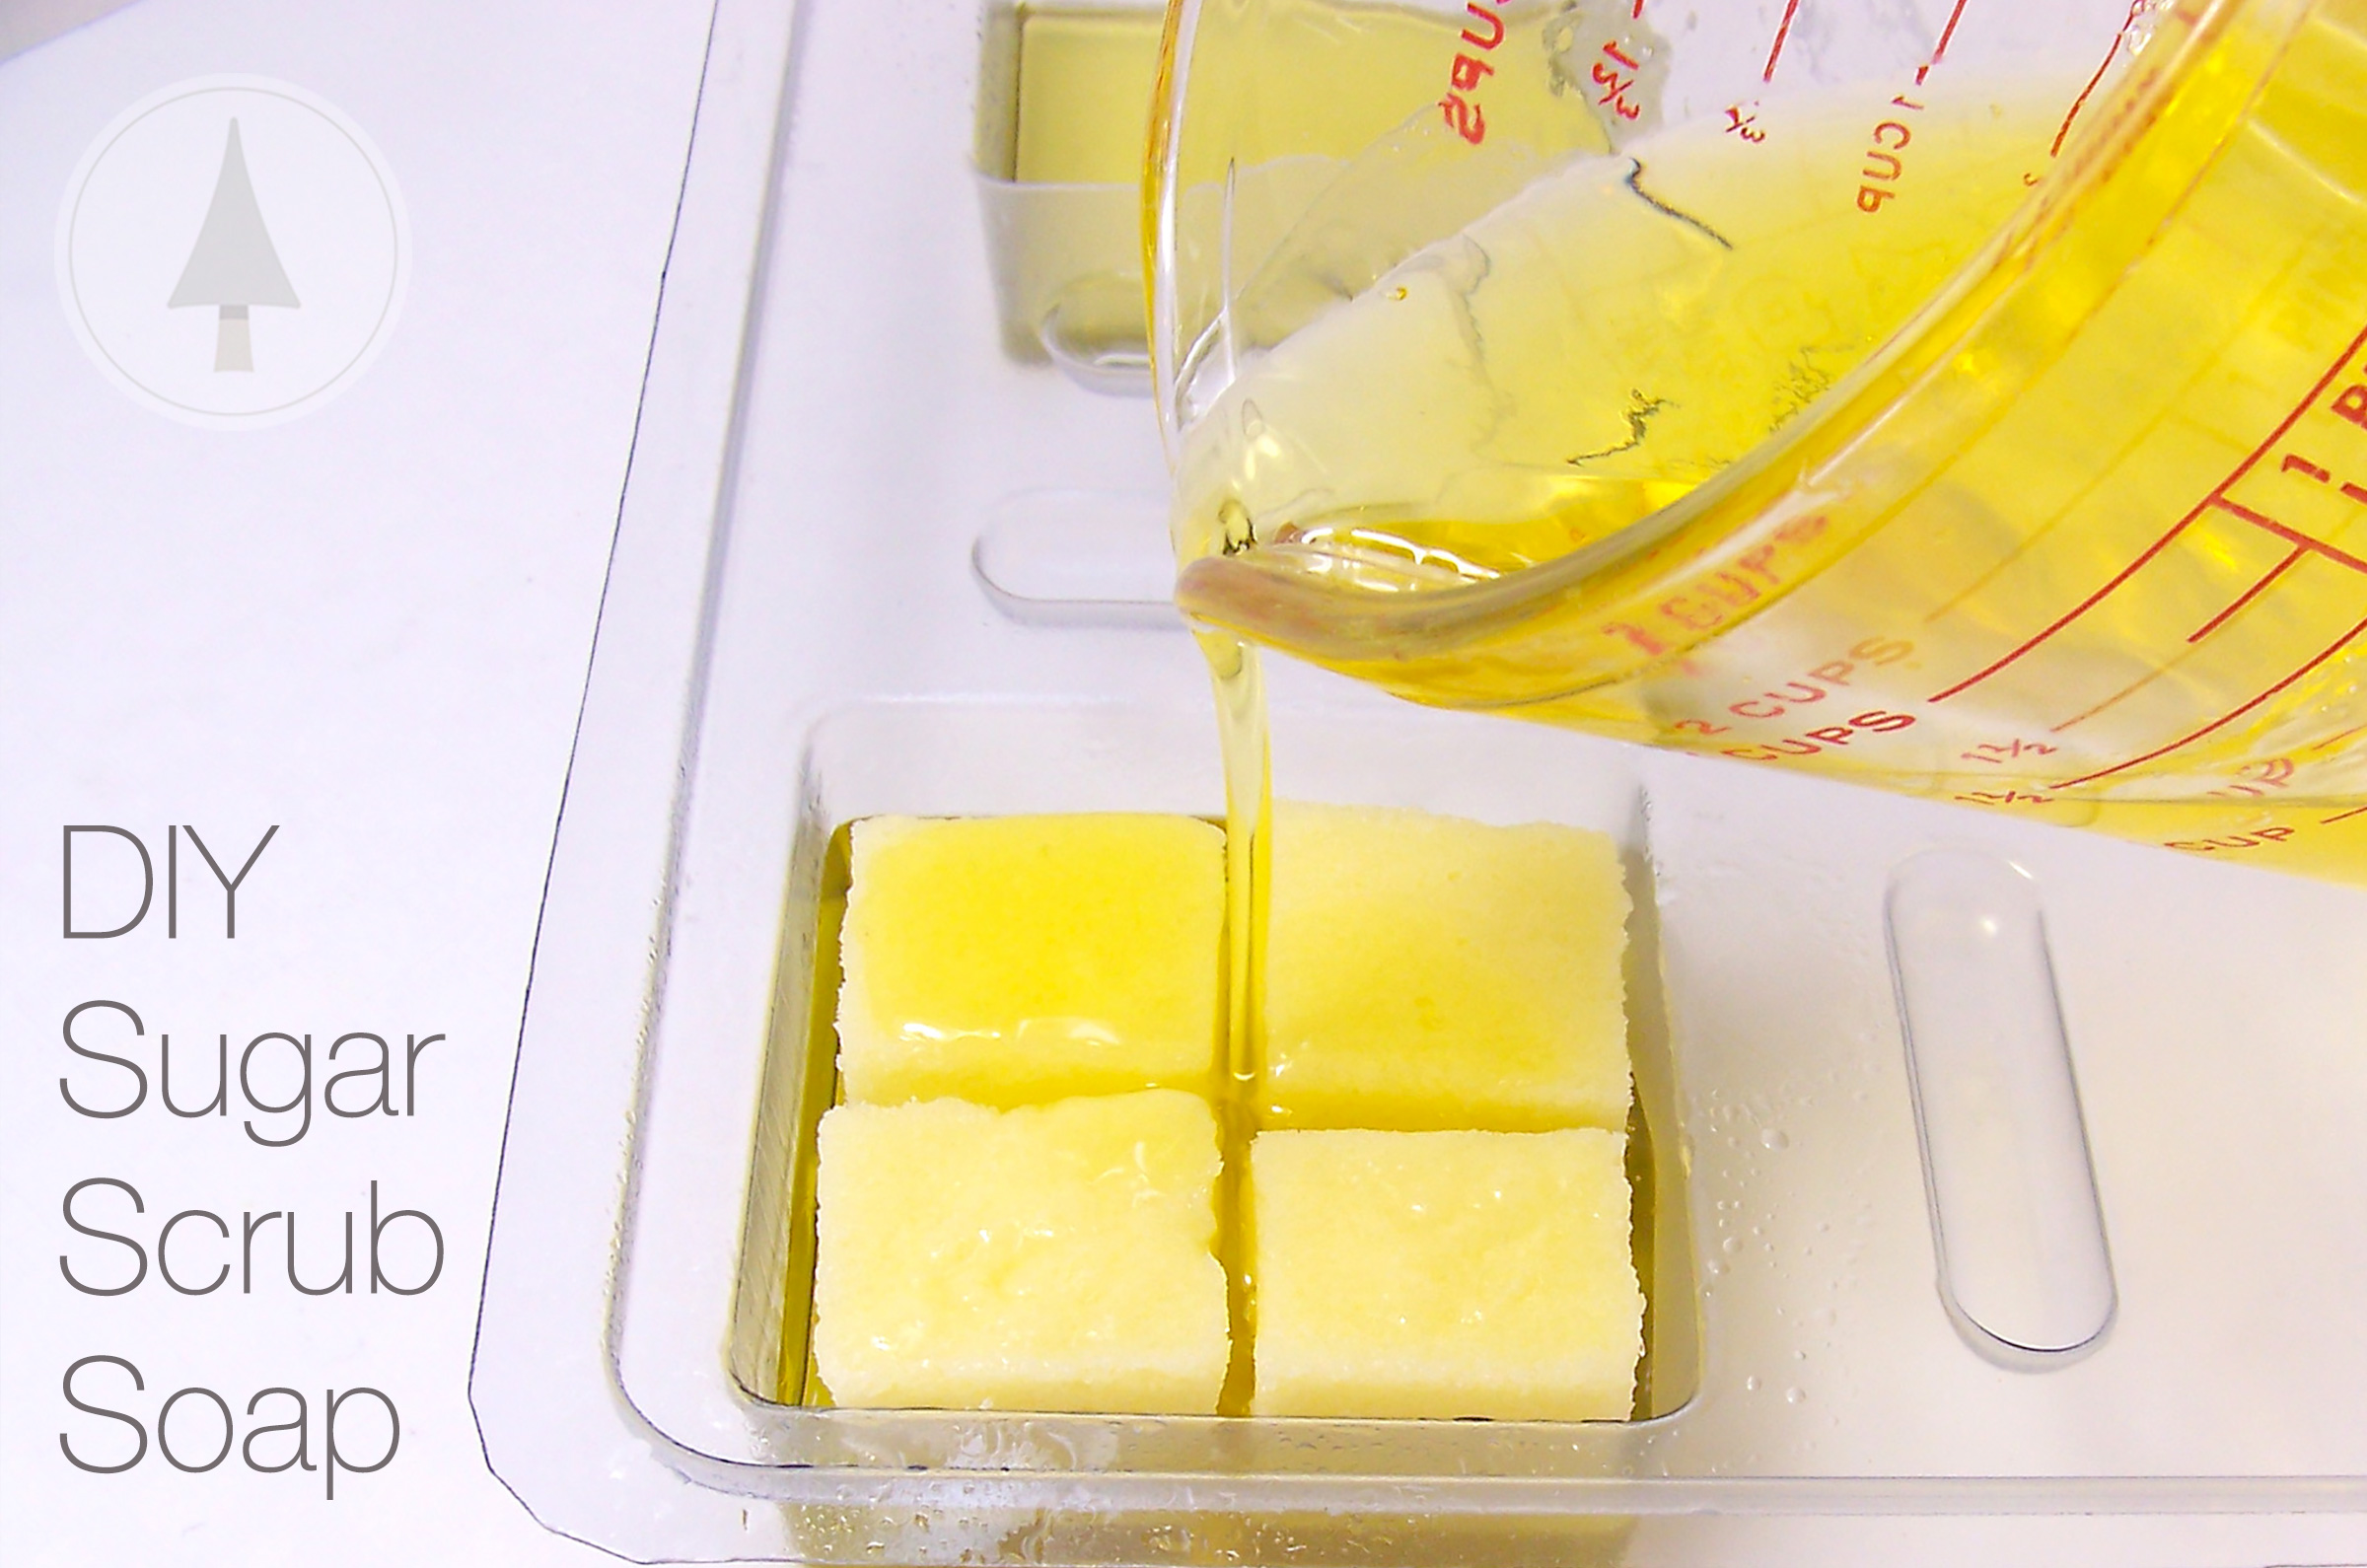 solid sugar scrub soap tutorial